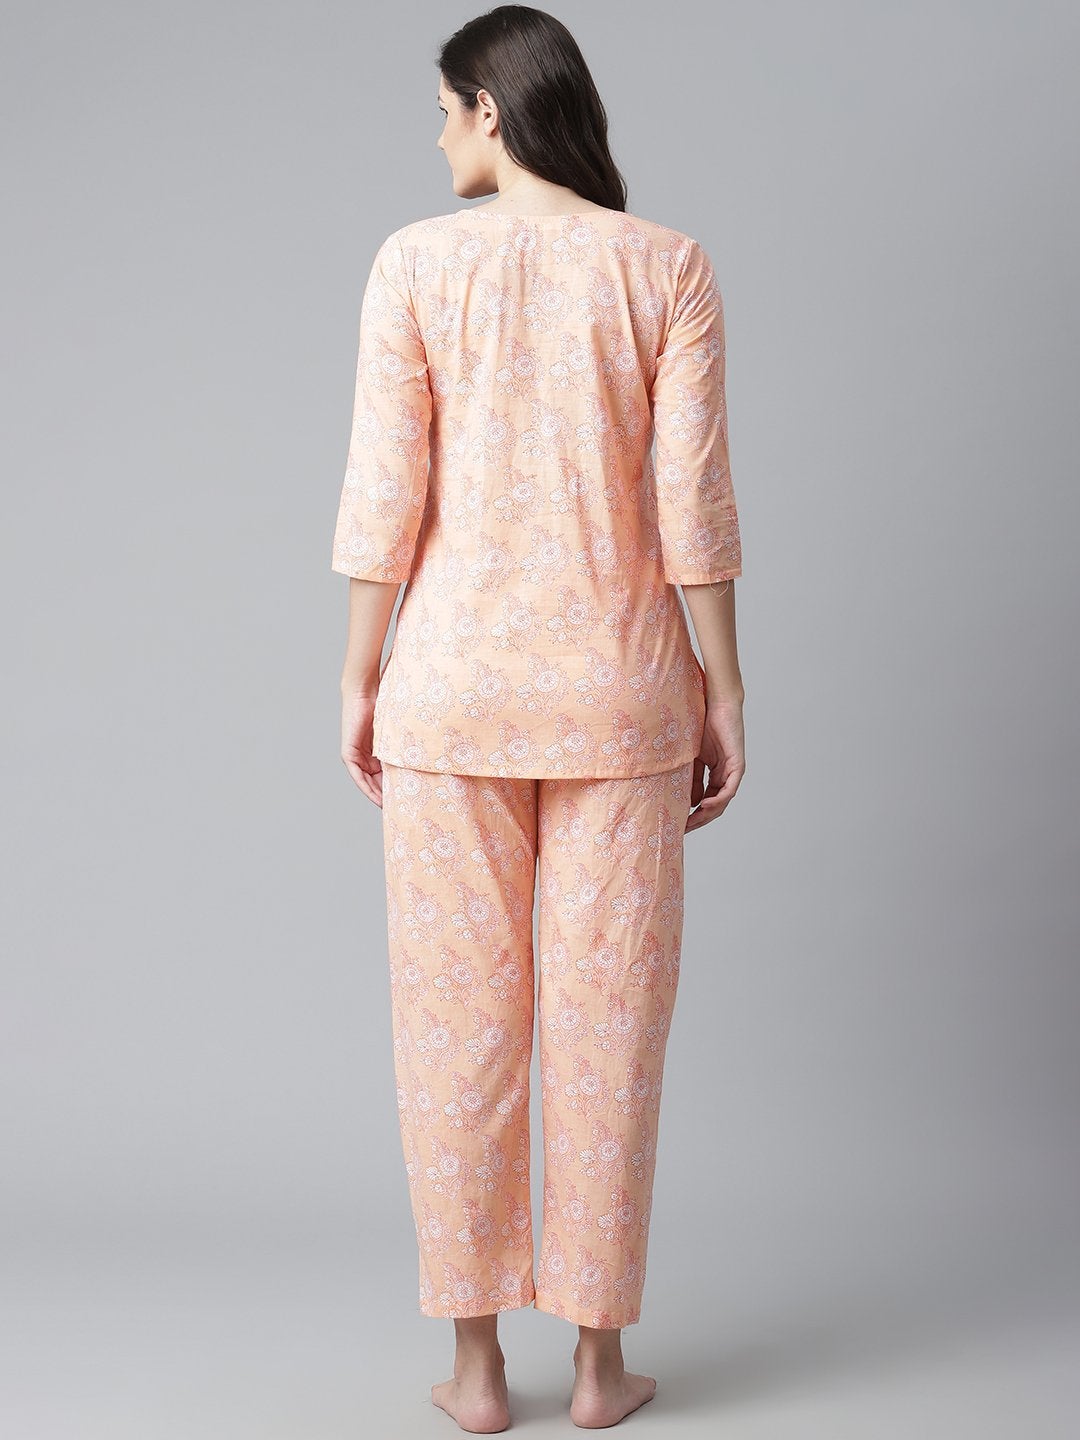 Women's Peach Printed Cotton Nightwear - Noz2Toz